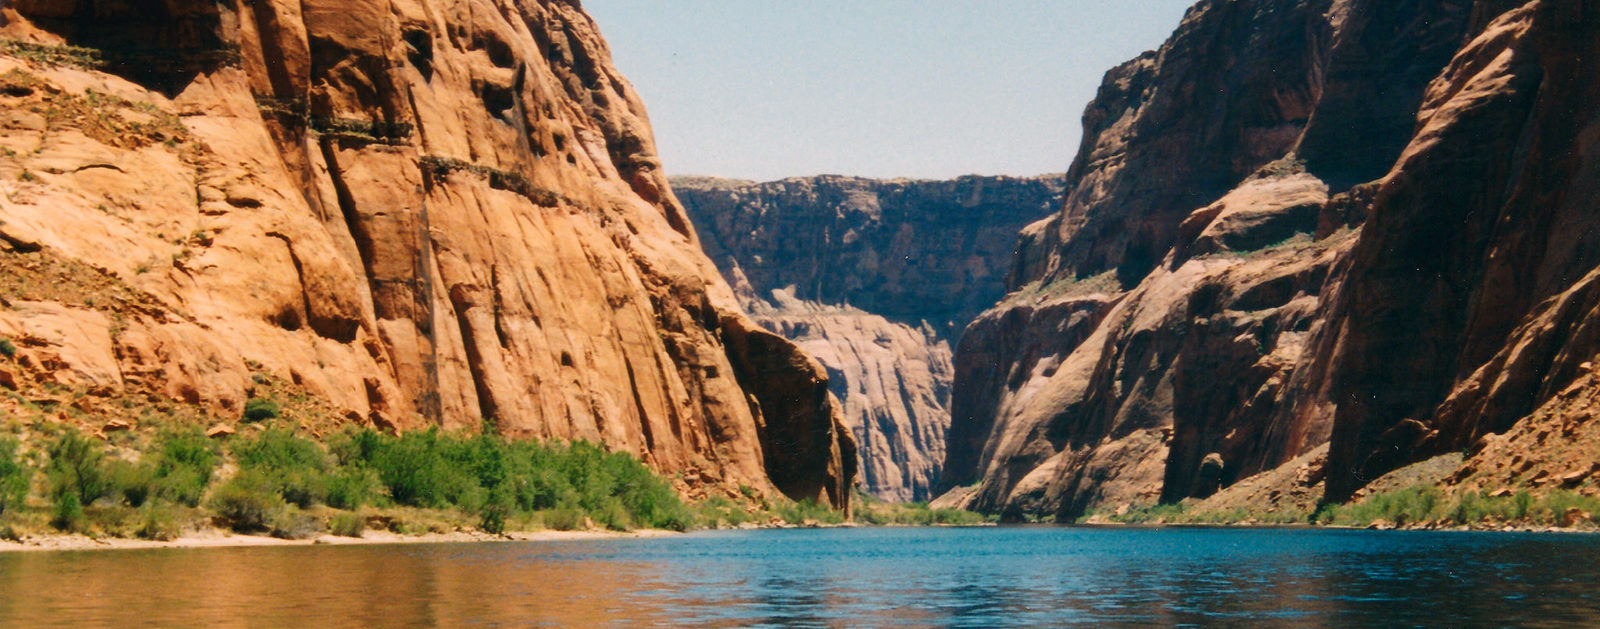 Colorado River | Jon Stow [FlickrCC]